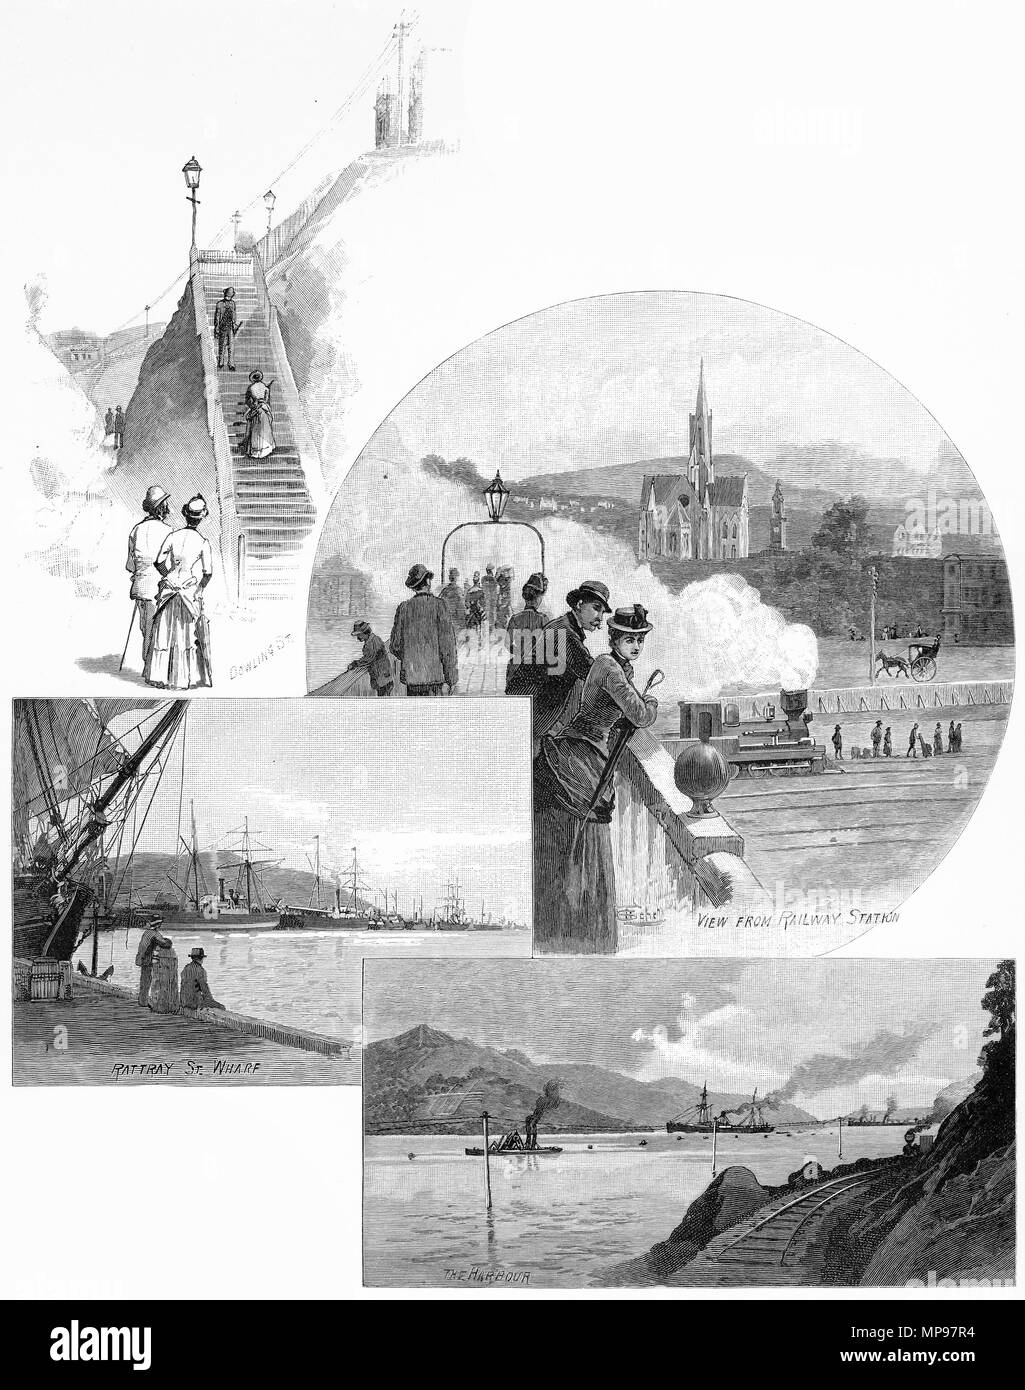 Gravure de scènes diverses autour de la ville de Dunedin vers 1880, en Nouvelle-Zélande. À partir de l'Atlas pittoresque d'Australasie Vol 3, 1886 Banque D'Images